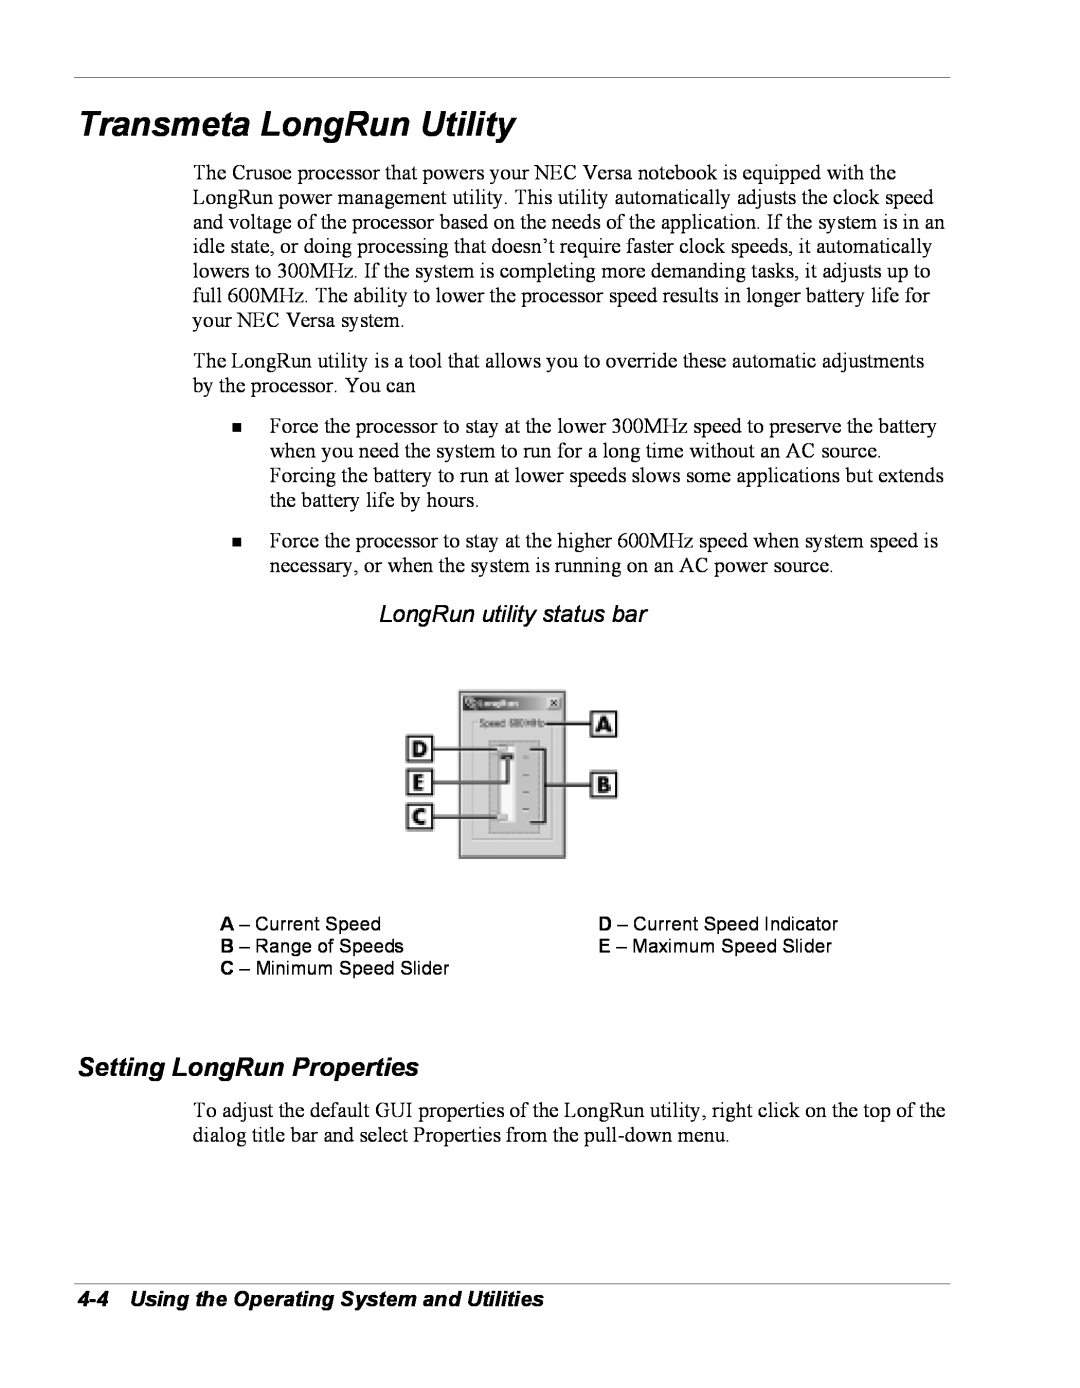 NEC Versa Series manual Transmeta LongRun Utility, Setting LongRun Properties, LongRun utility status bar 